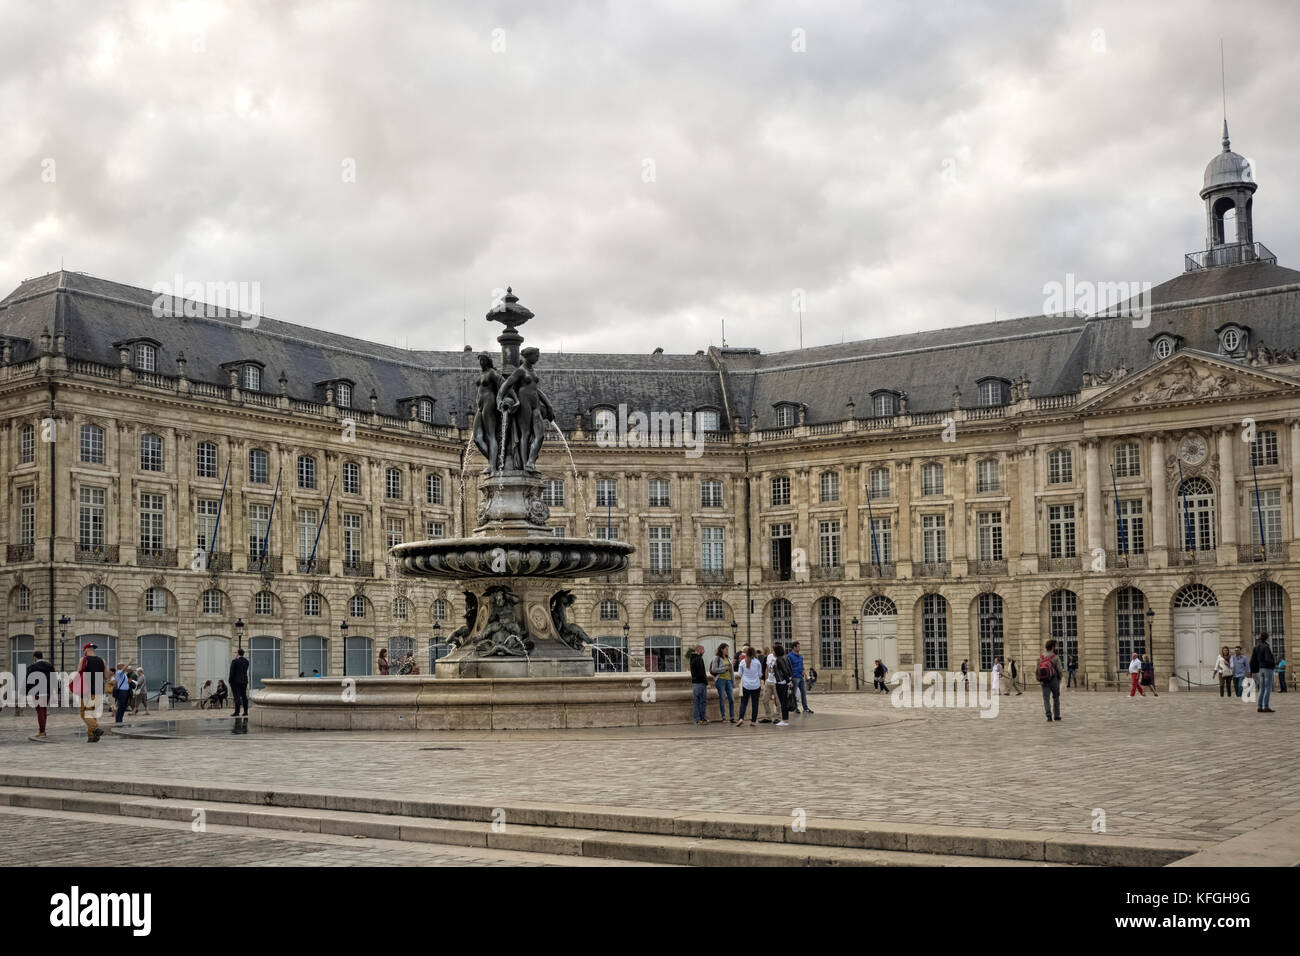 PLACE DE LA BOURSE, BORDEAUX, FRANCE:  The Fouuntain in the centre of Place de la Bourse Square. Stock Photo